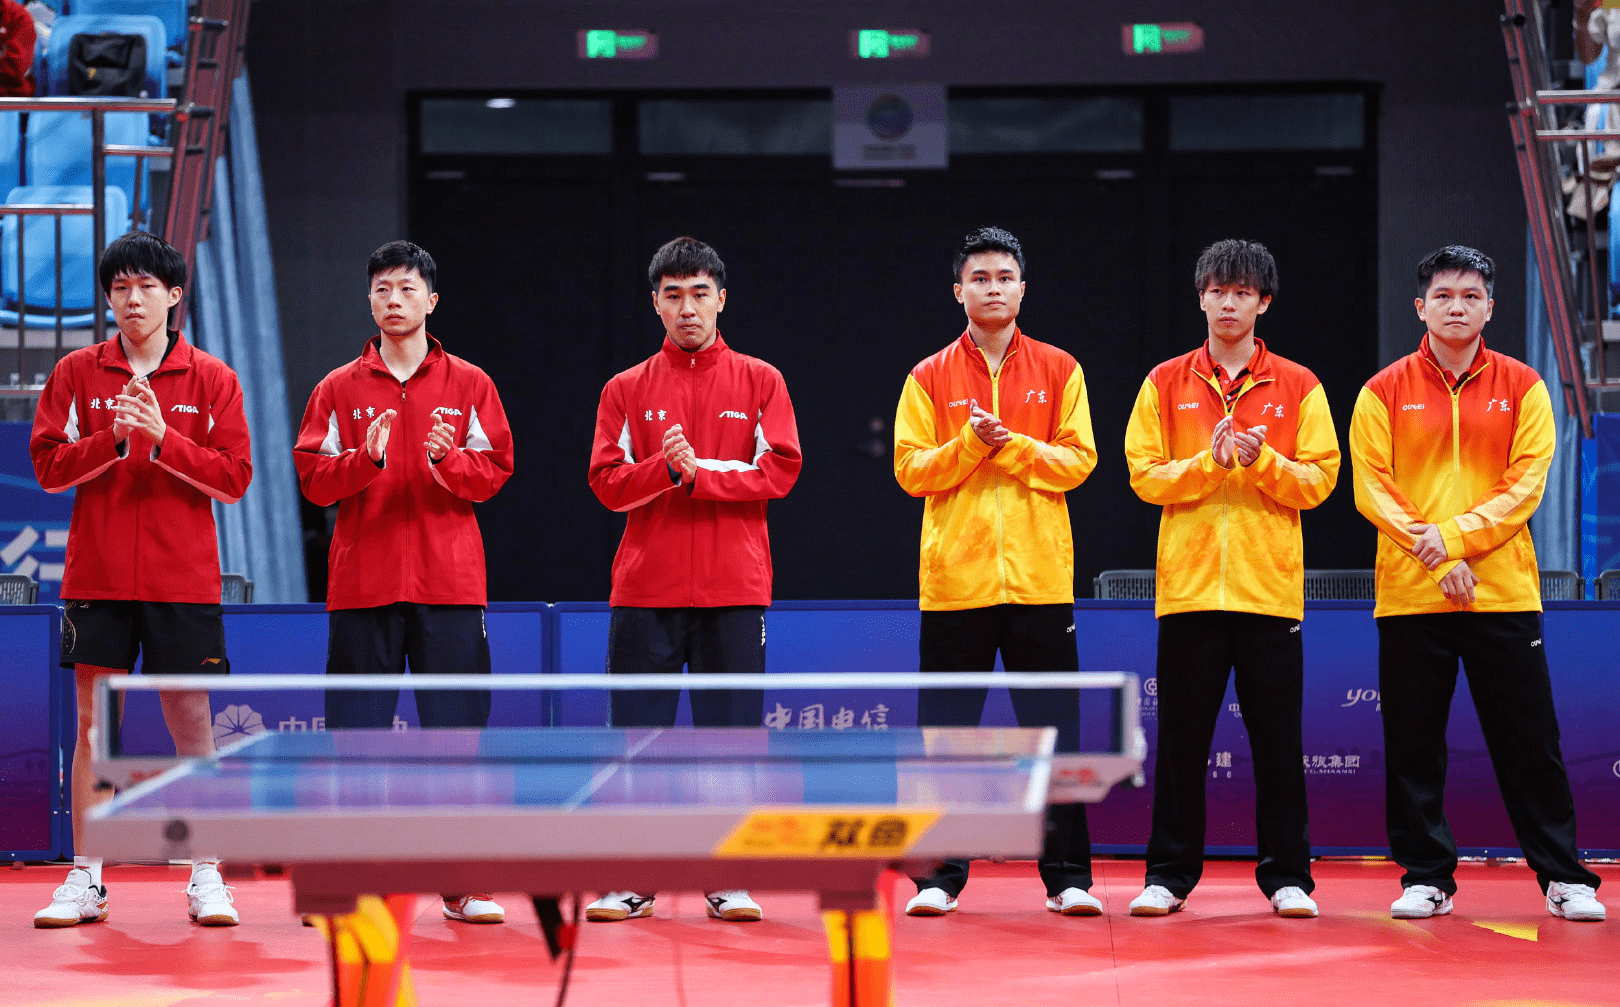 乒乓球男子团体赛冠军含金量很高,在某种程度上甚至能媲美男单金牌